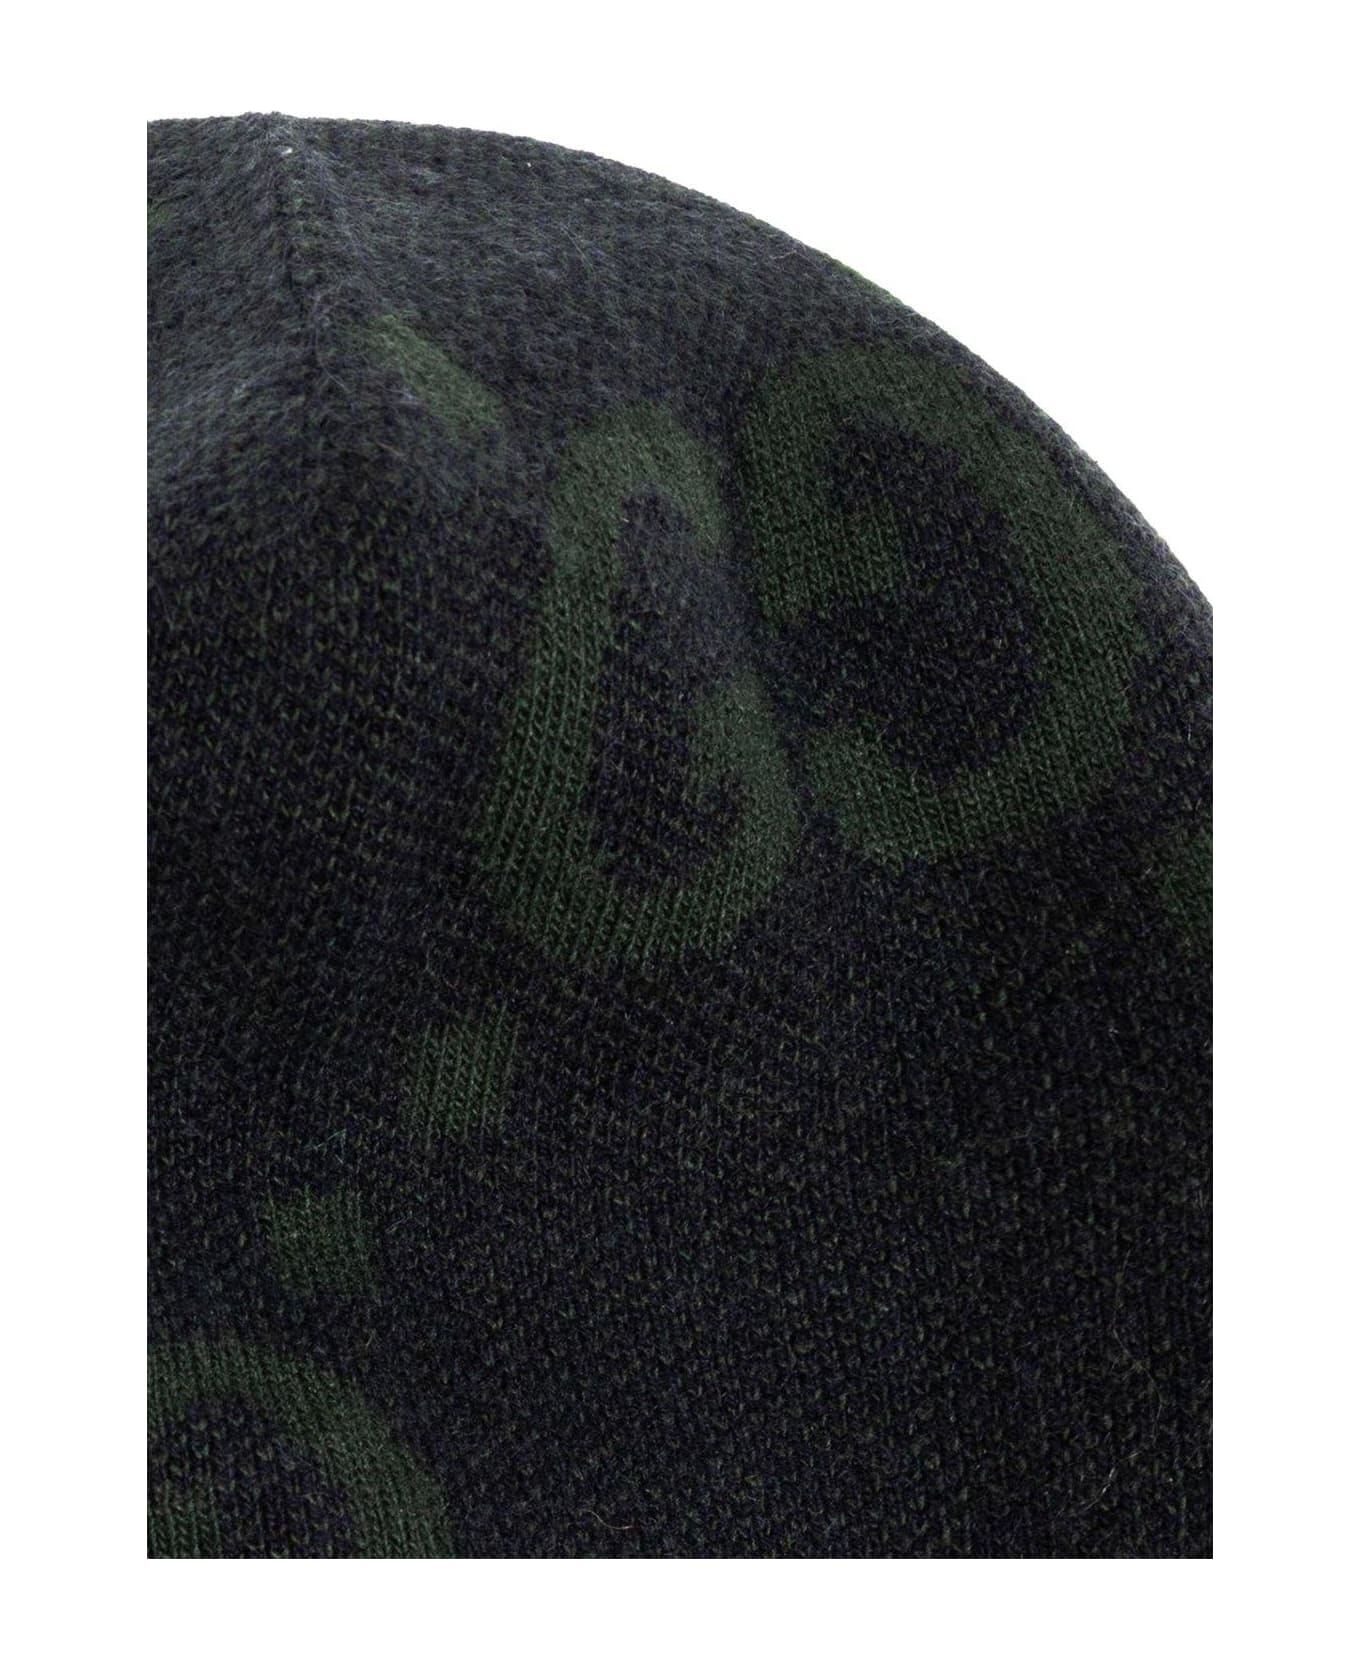 Gucci Monogram Knitted Beanie - Navy/dark green